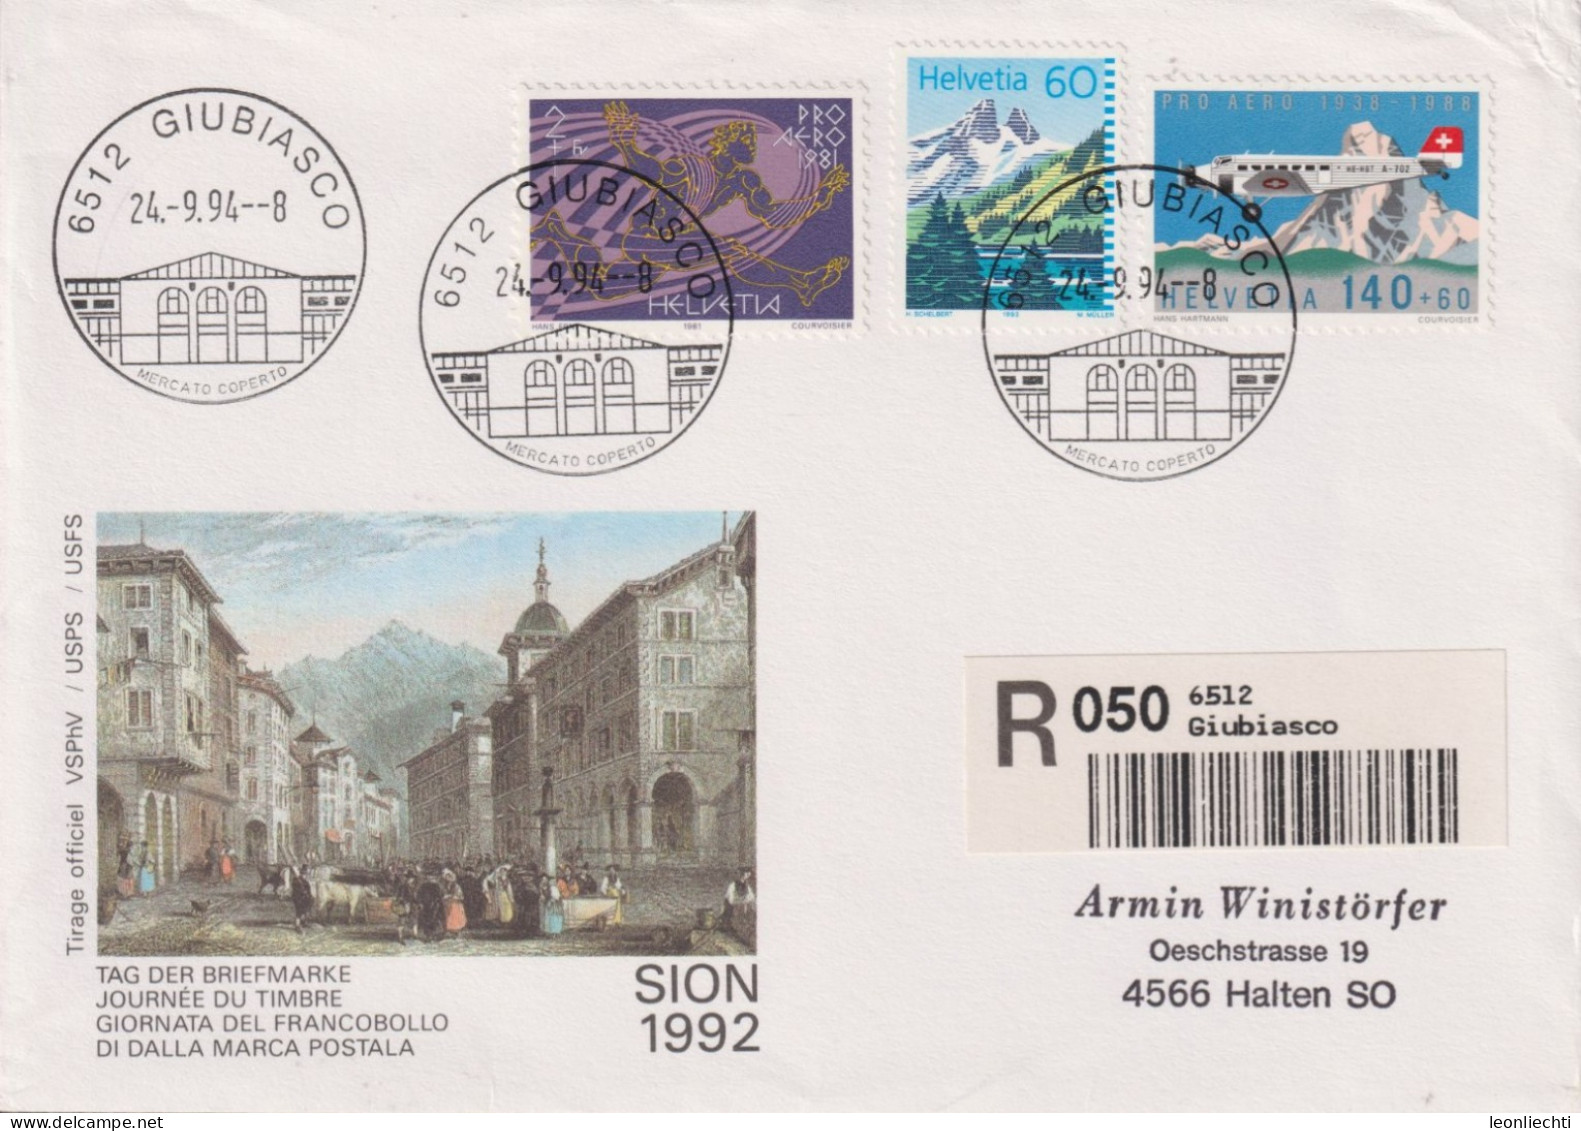 1994 Schweiz Tag Der Briefmarke Sion, Zum:CH F49+W48+837, Mi:CH 1369+1196+1489, ° 6512 GIUBIASSCO - Lettres & Documents